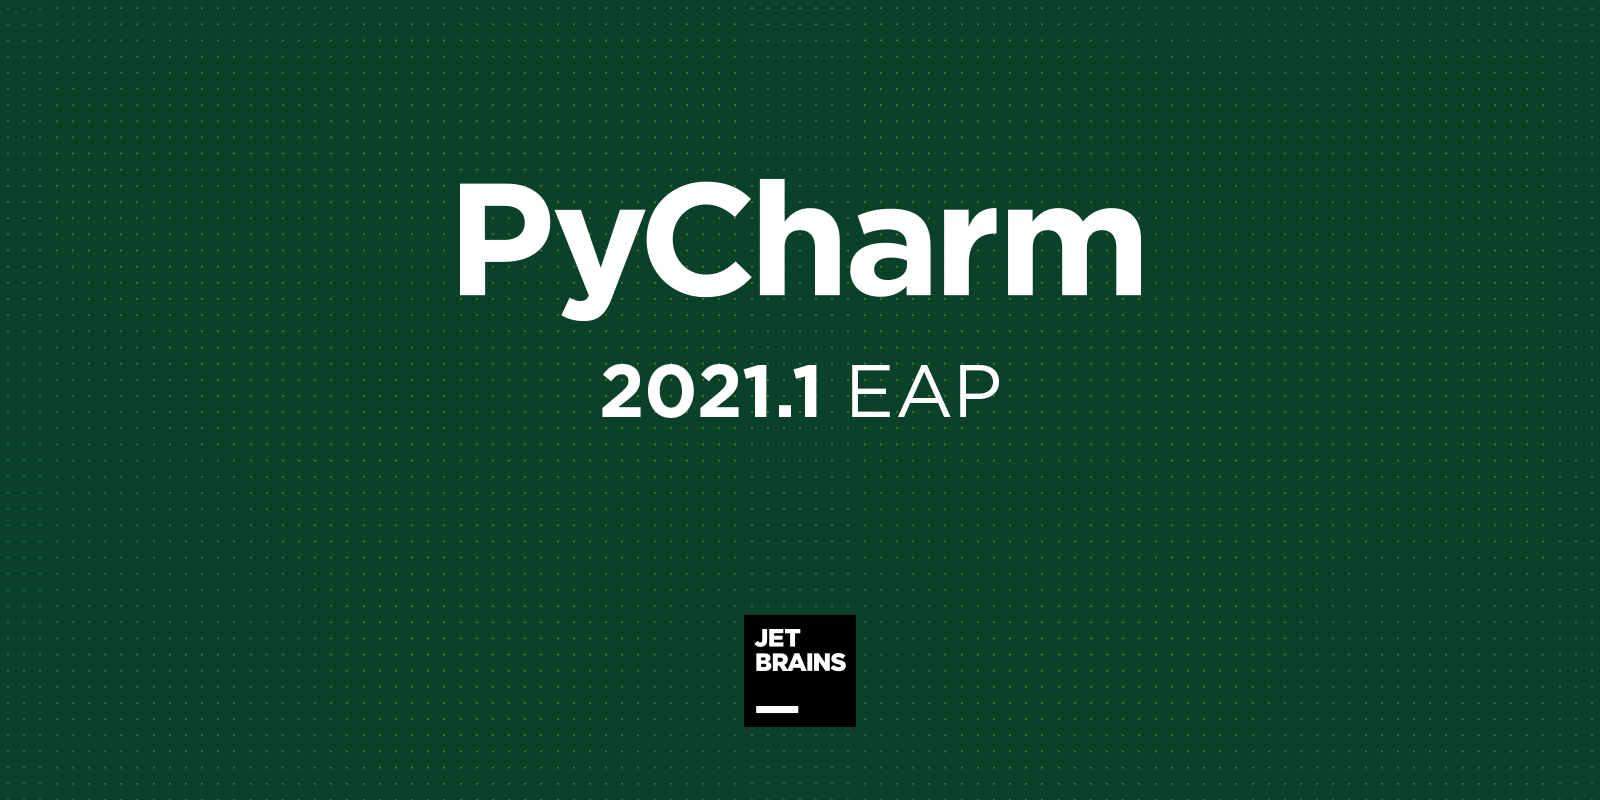 Pycharm 21 1 Eap 2 用于ds库的自动导入 支持json行 更多西甲积分manbetx2 0jetbrains博客 狗万投资 西甲积分manbetx2 0 下载万博体育app